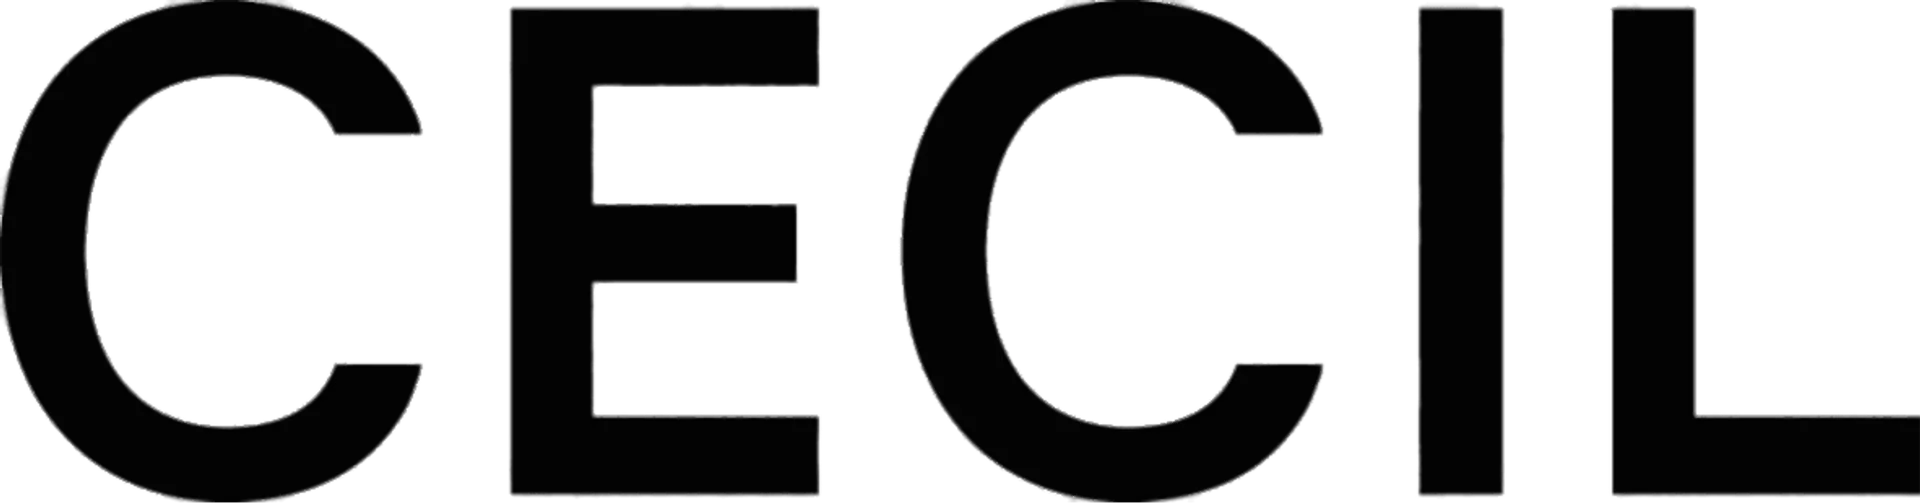 CECIL logo